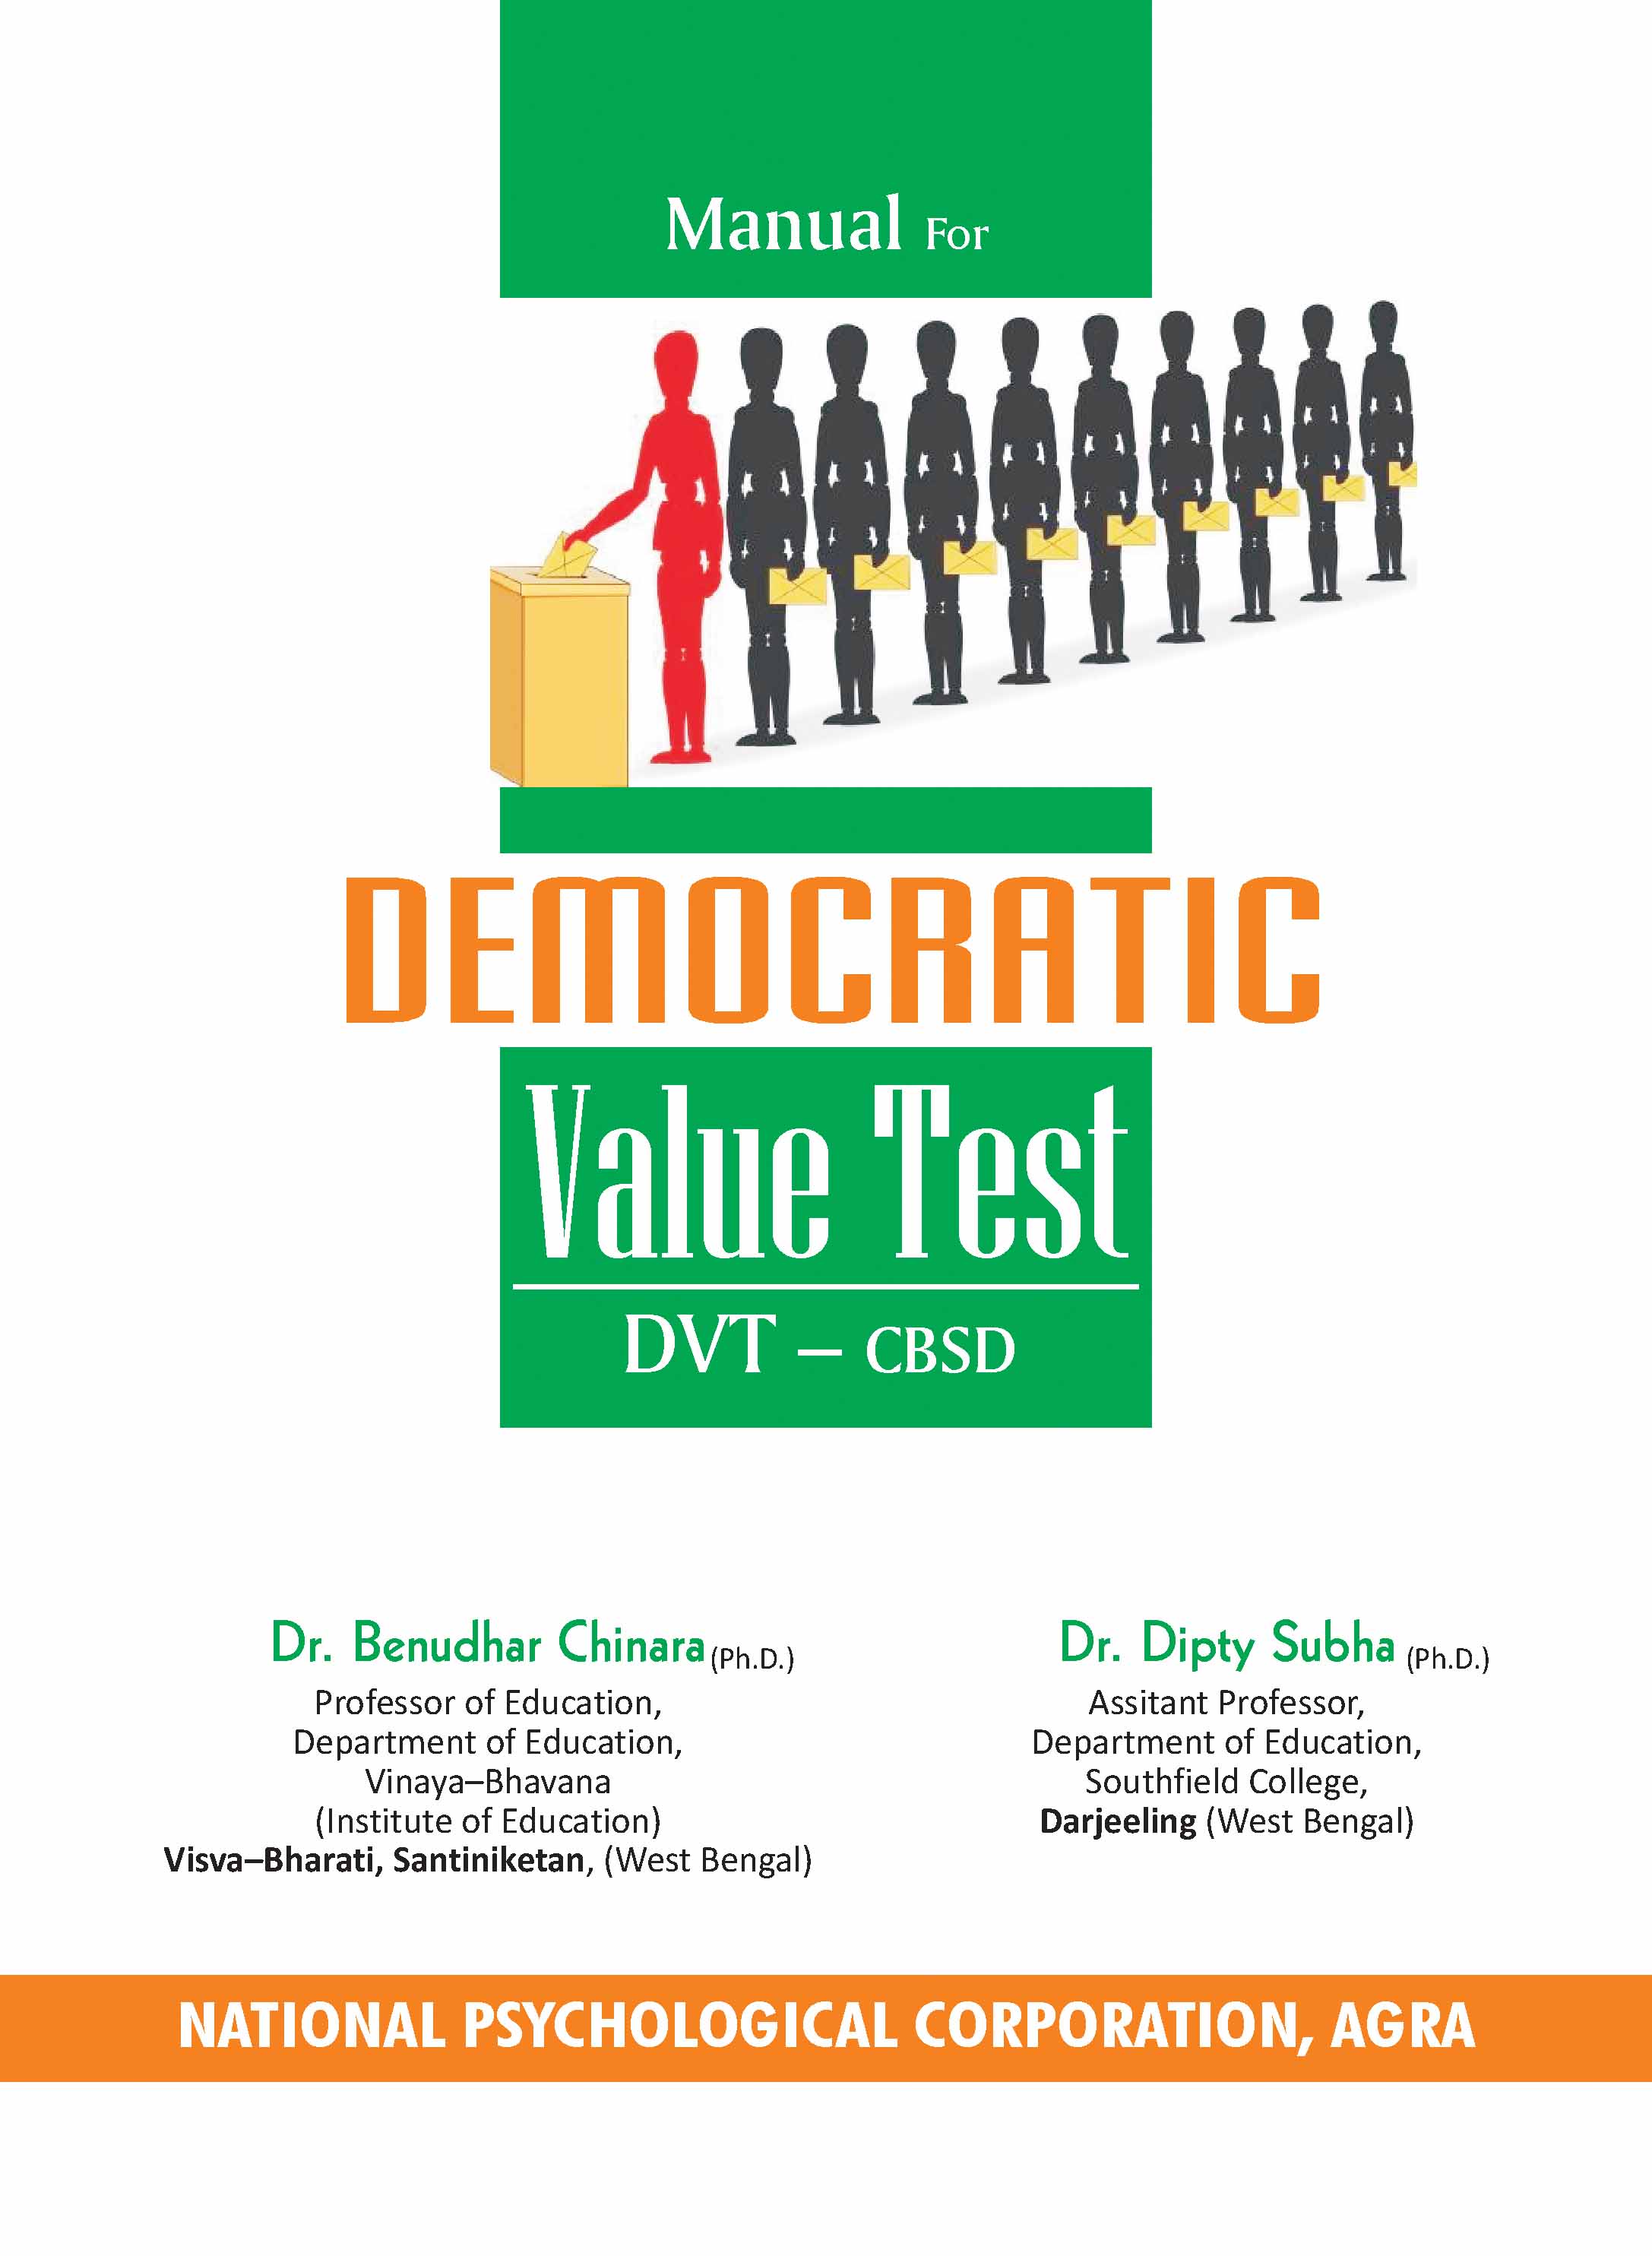 DEMOCRATIC-VALUE-TEST-